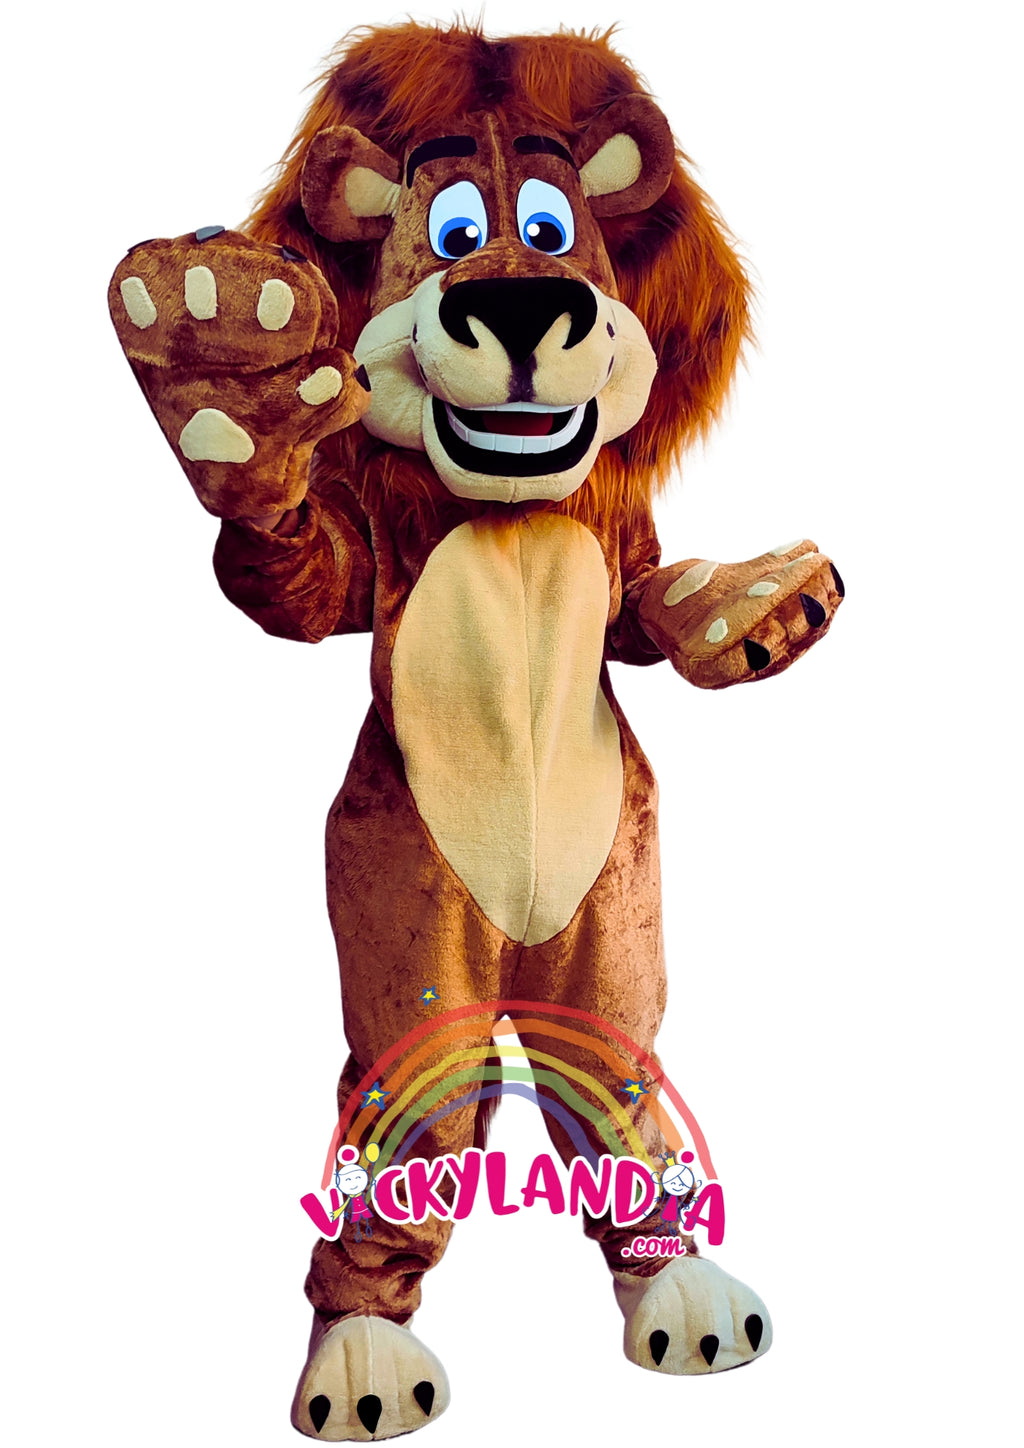 Descubre la magia de nuestro muñeco publicitario de León Rey de la Selva en Vickylandia. Son disfraces cabezones perfectos para fiestas infantiles, shows, cumpleaños, estrategias publicitarias, carnavales, fiestas patronales, espectáculos, cabalgatas y cualquier tipo de evento.